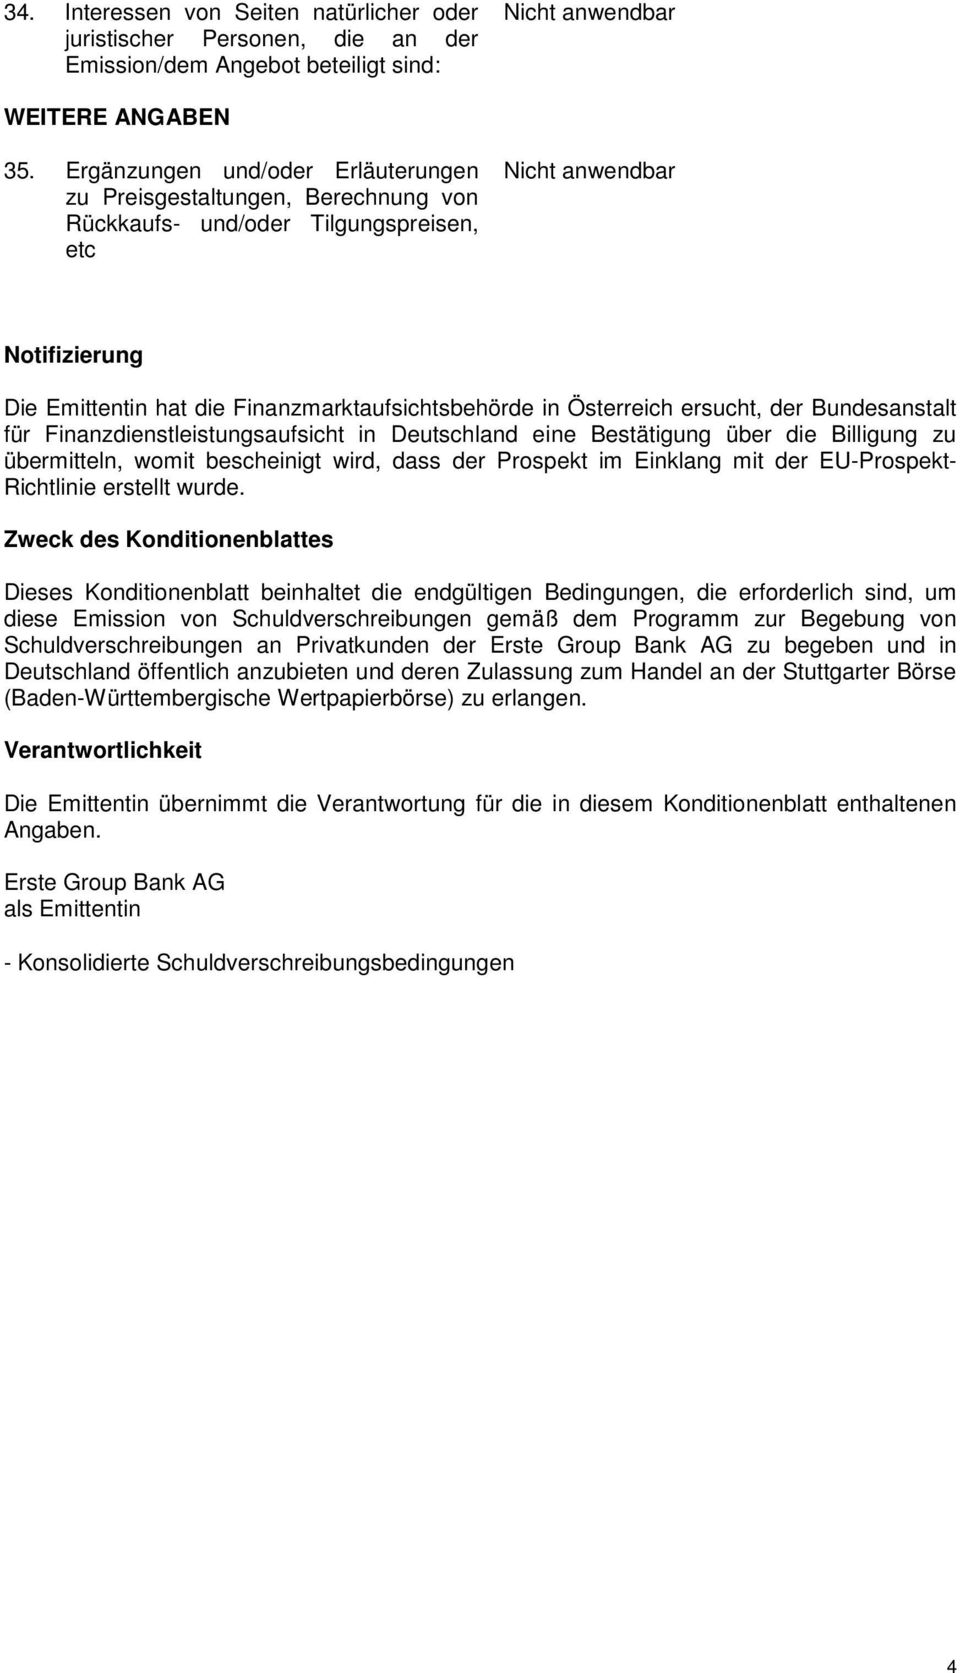 ersucht, der Bundesanstalt für Finanzdienstleistungsaufsicht in Deutschland eine Bestätigung über die Billigung zu übermitteln, womit bescheinigt wird, dass der Prospekt im Einklang mit der